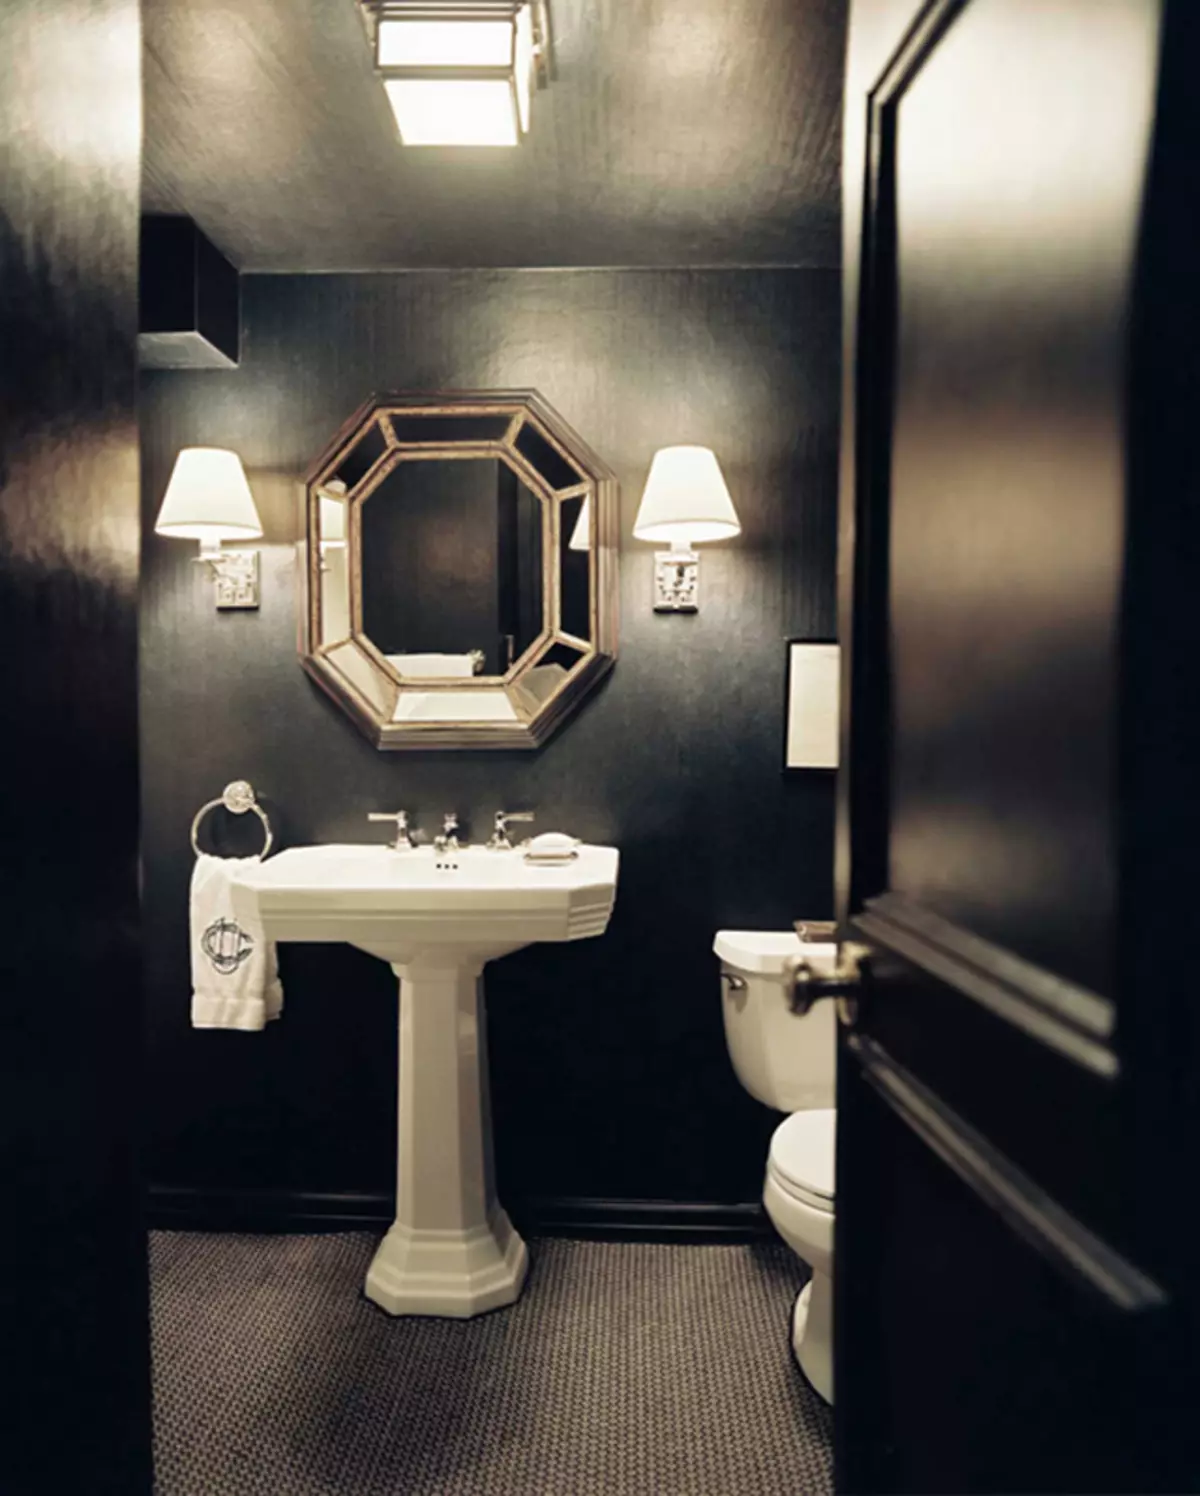 توالت سیاه (67 عکس): طراحی توالت در رنگ های سیاه و سفید، انتخاب یک توالت رنگ تیره در یک آپارتمان، به پایان رساندن با کاشی های سیاه و قرمز 10501_45